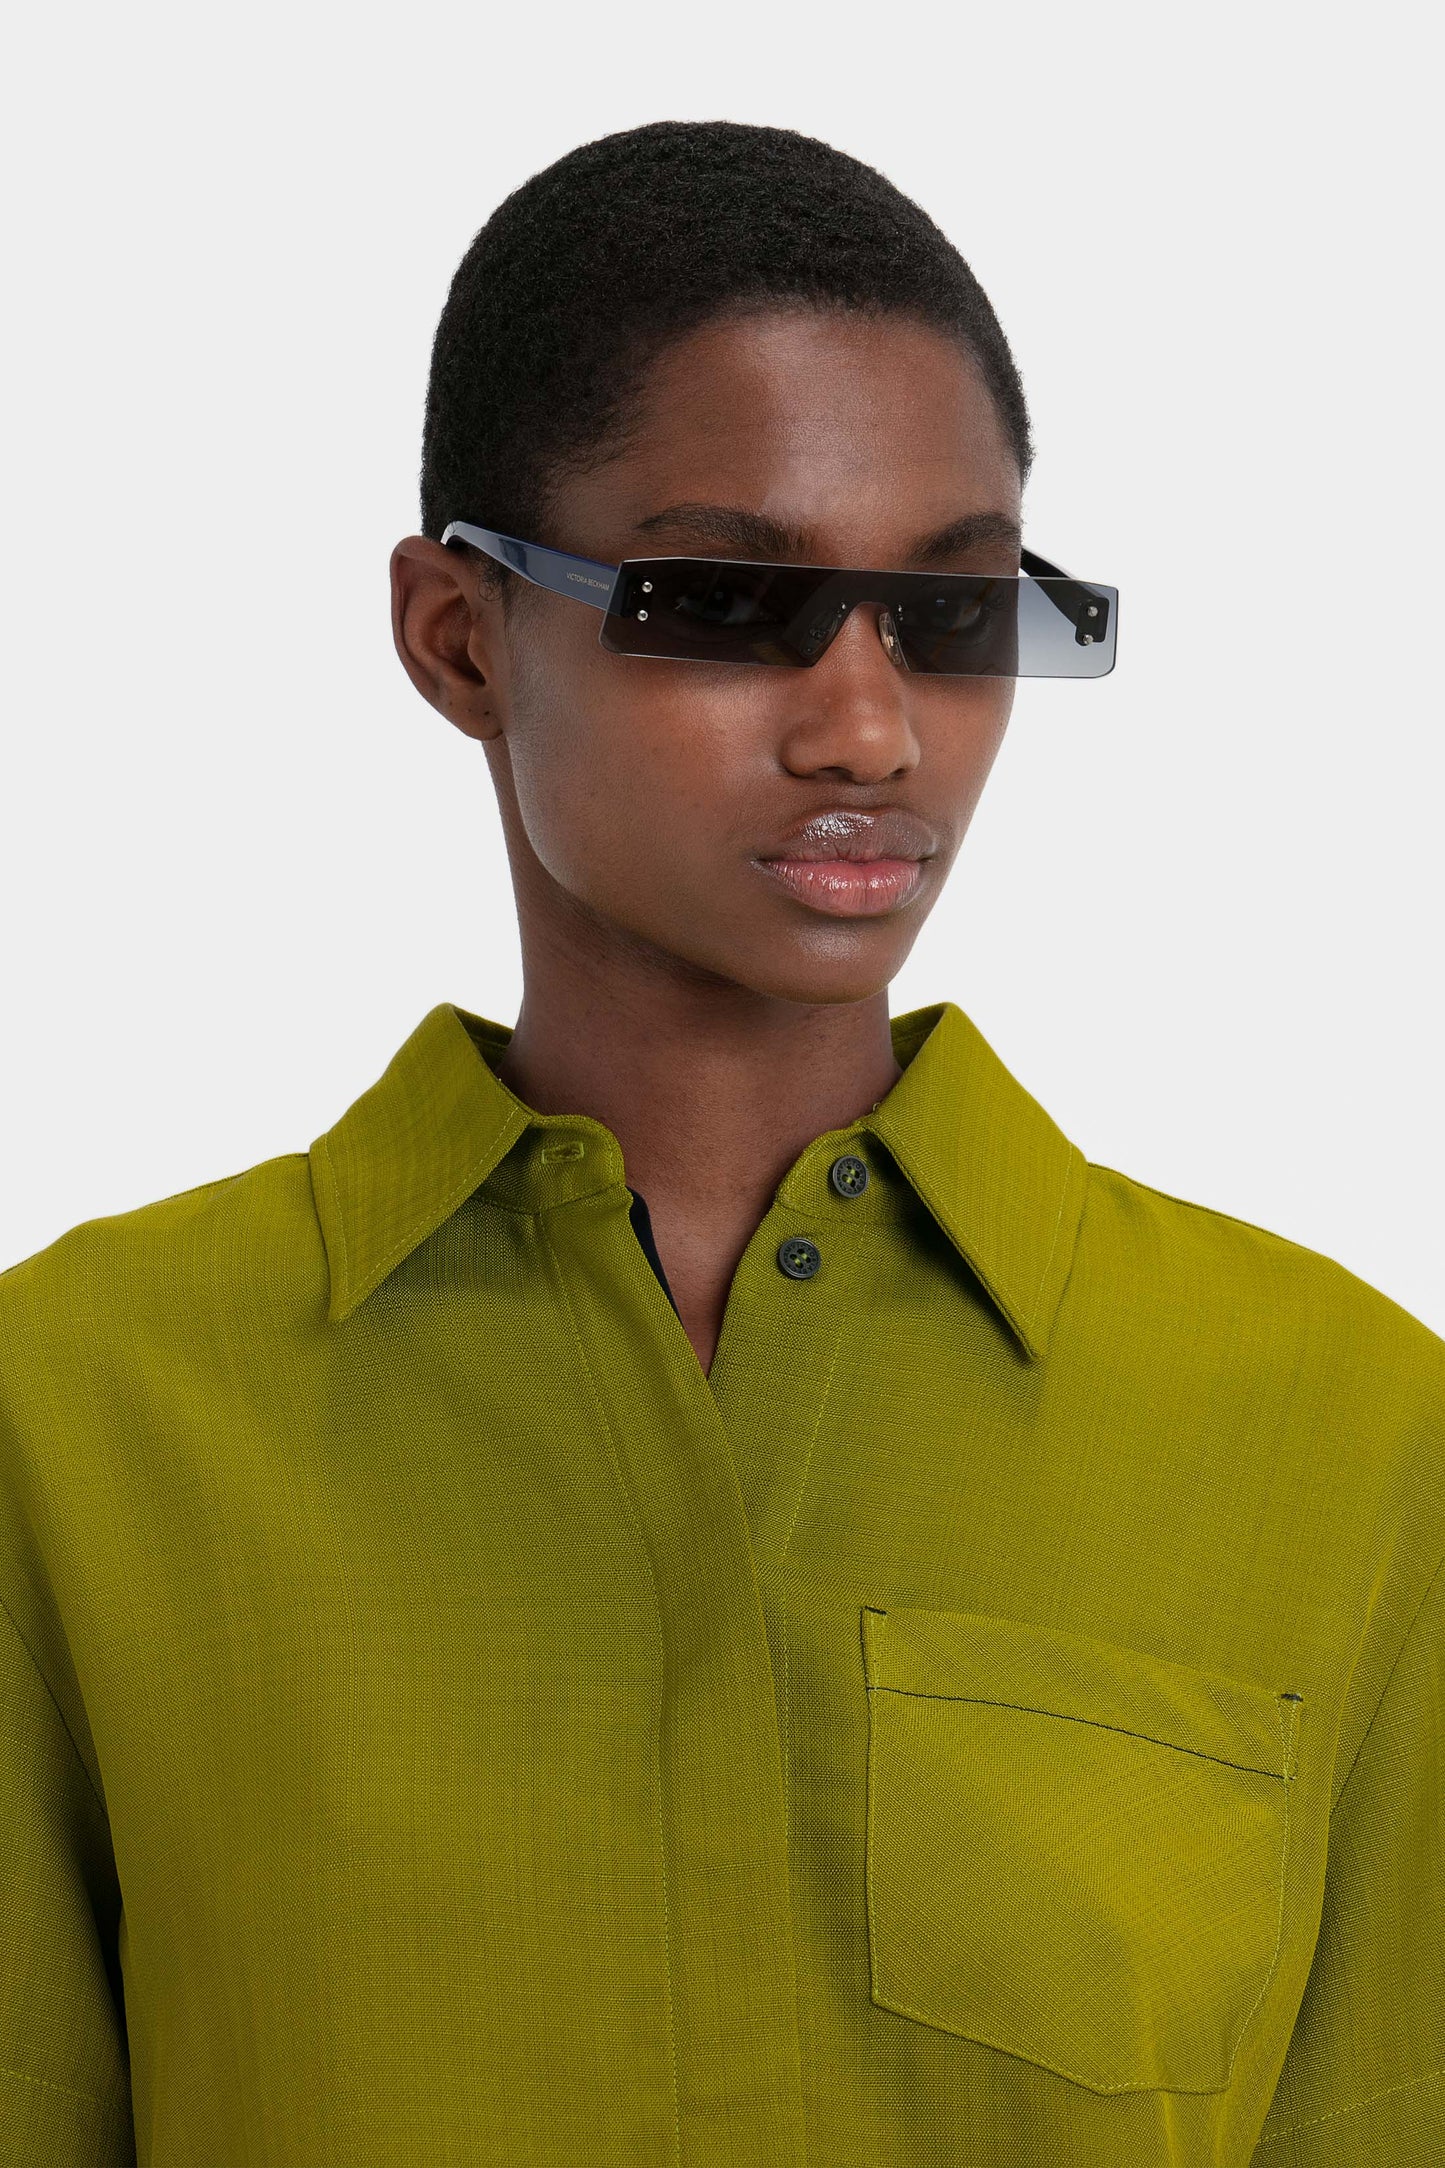 Victoria Beckham Mini Visor Sunglasses in Black-Green